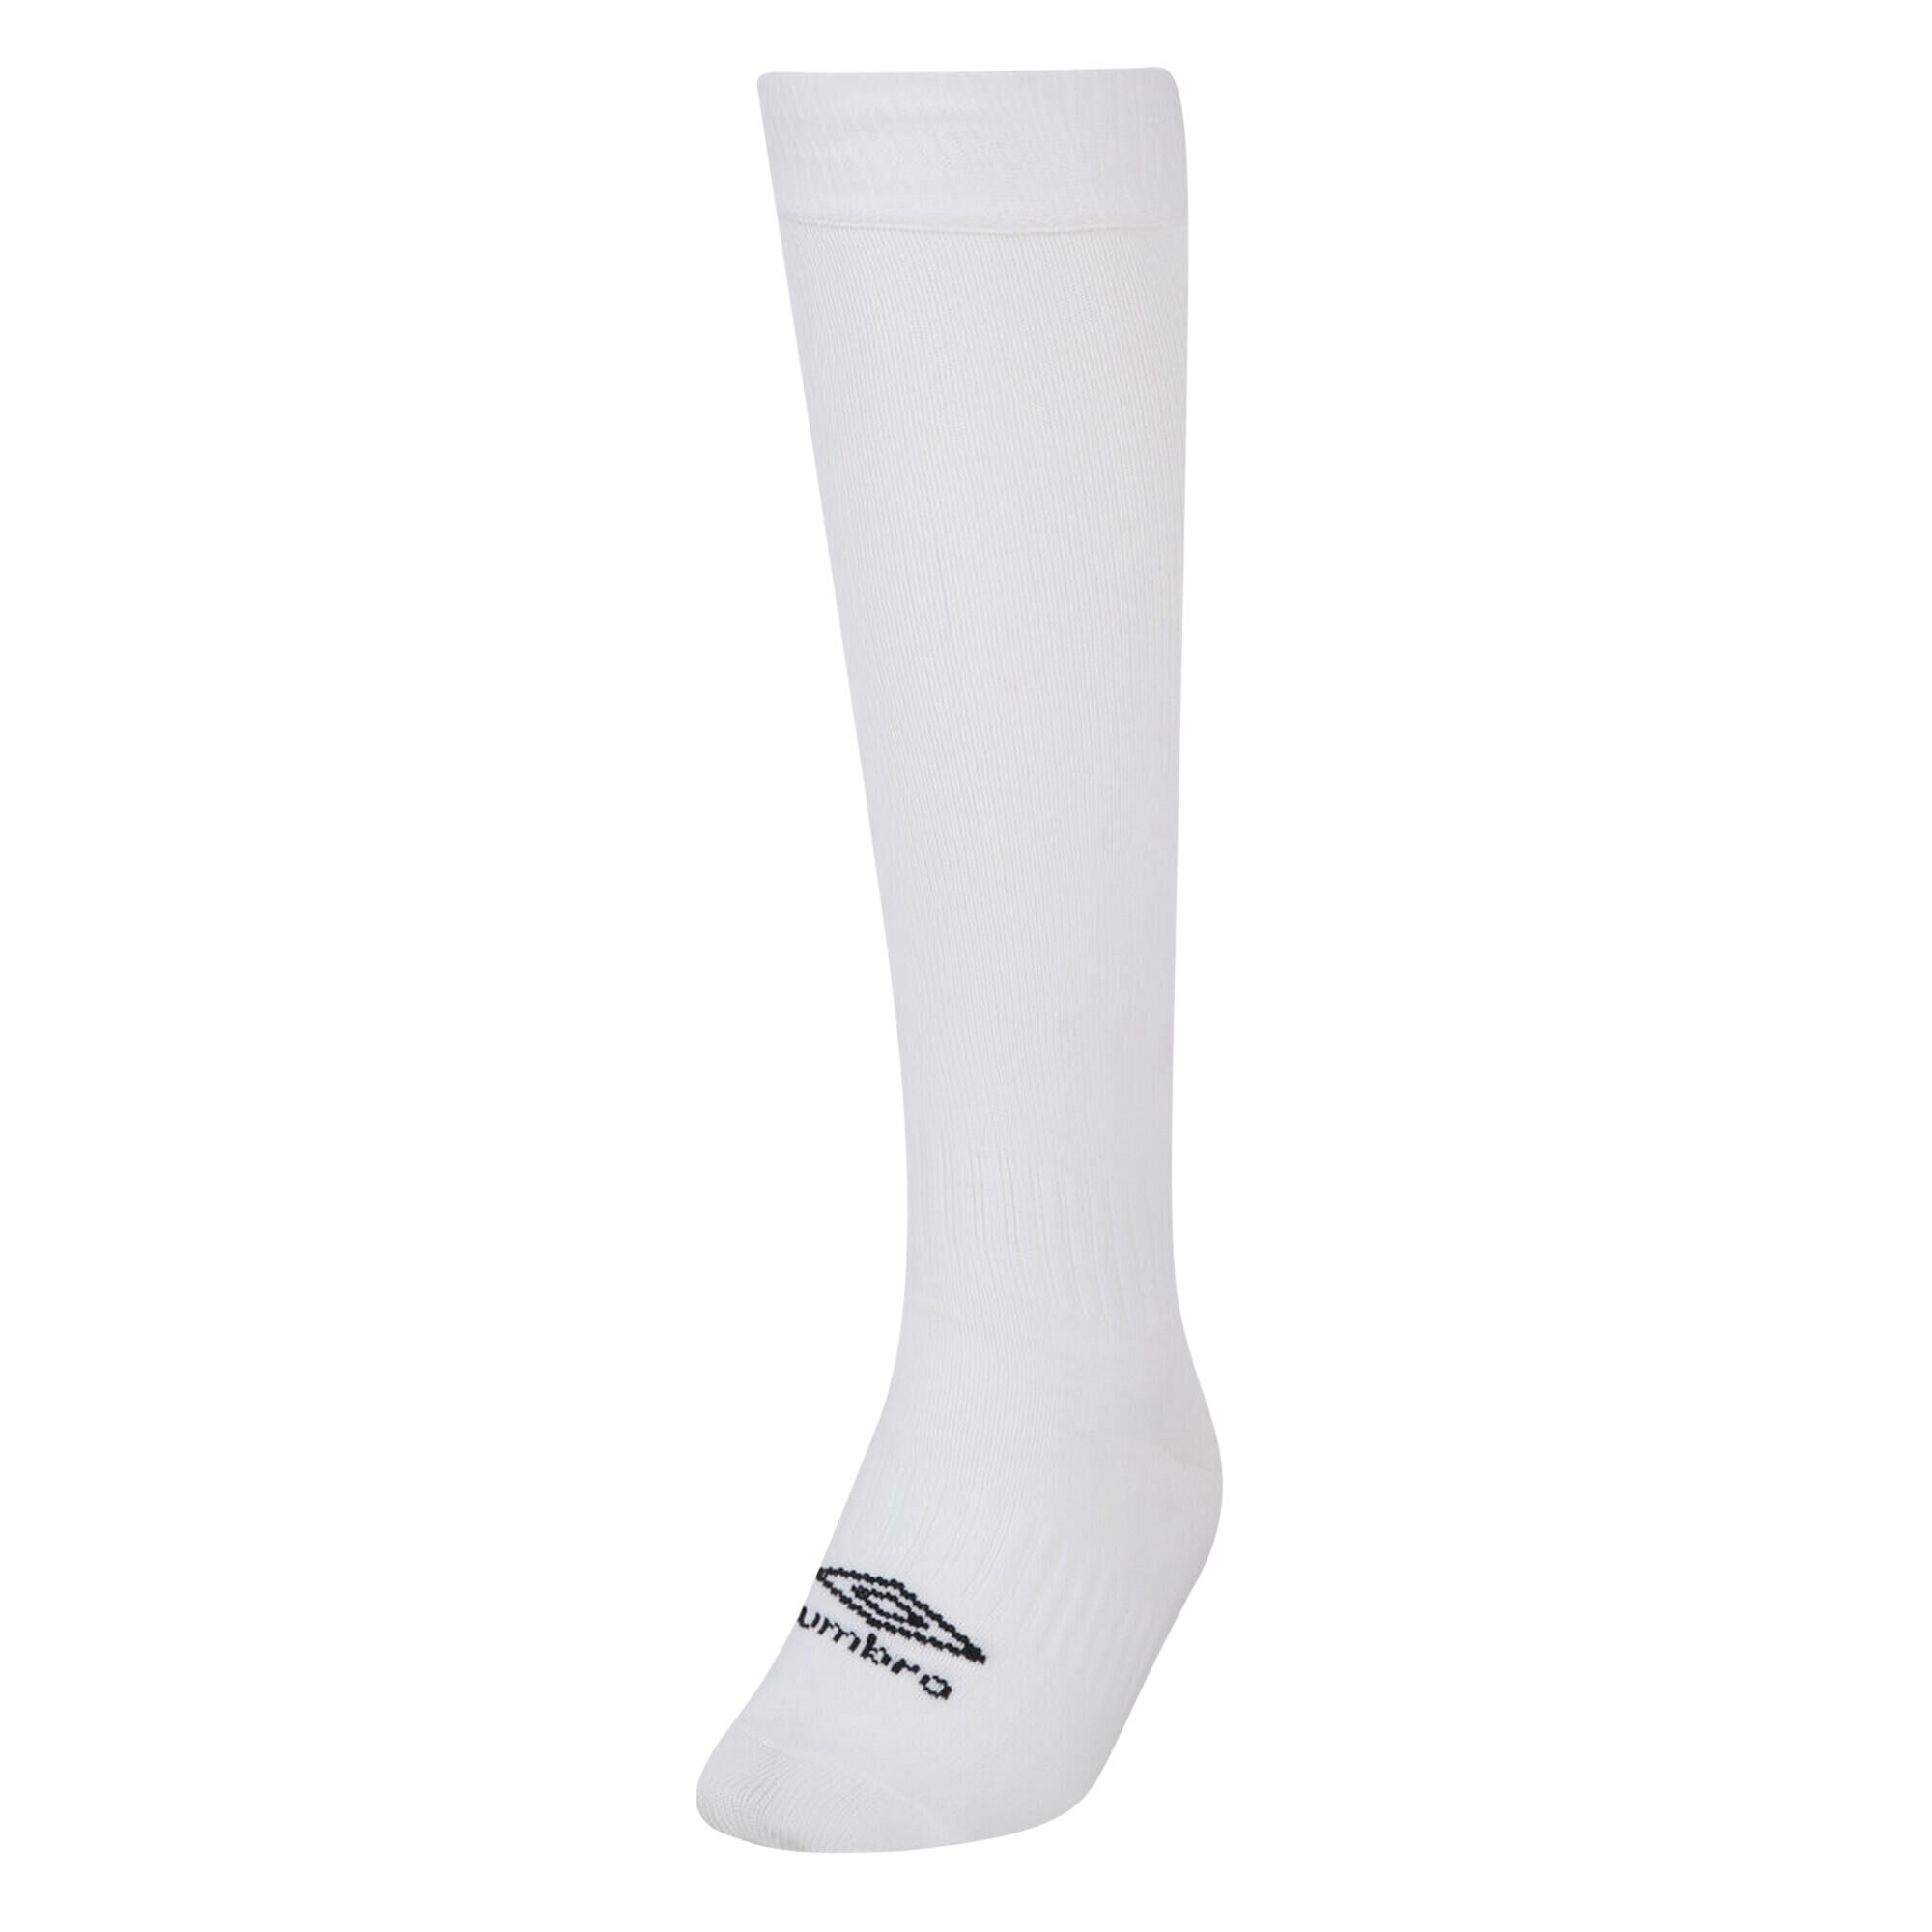 UMBRO Childrens/Kids Primo Football Socks (White/Black)